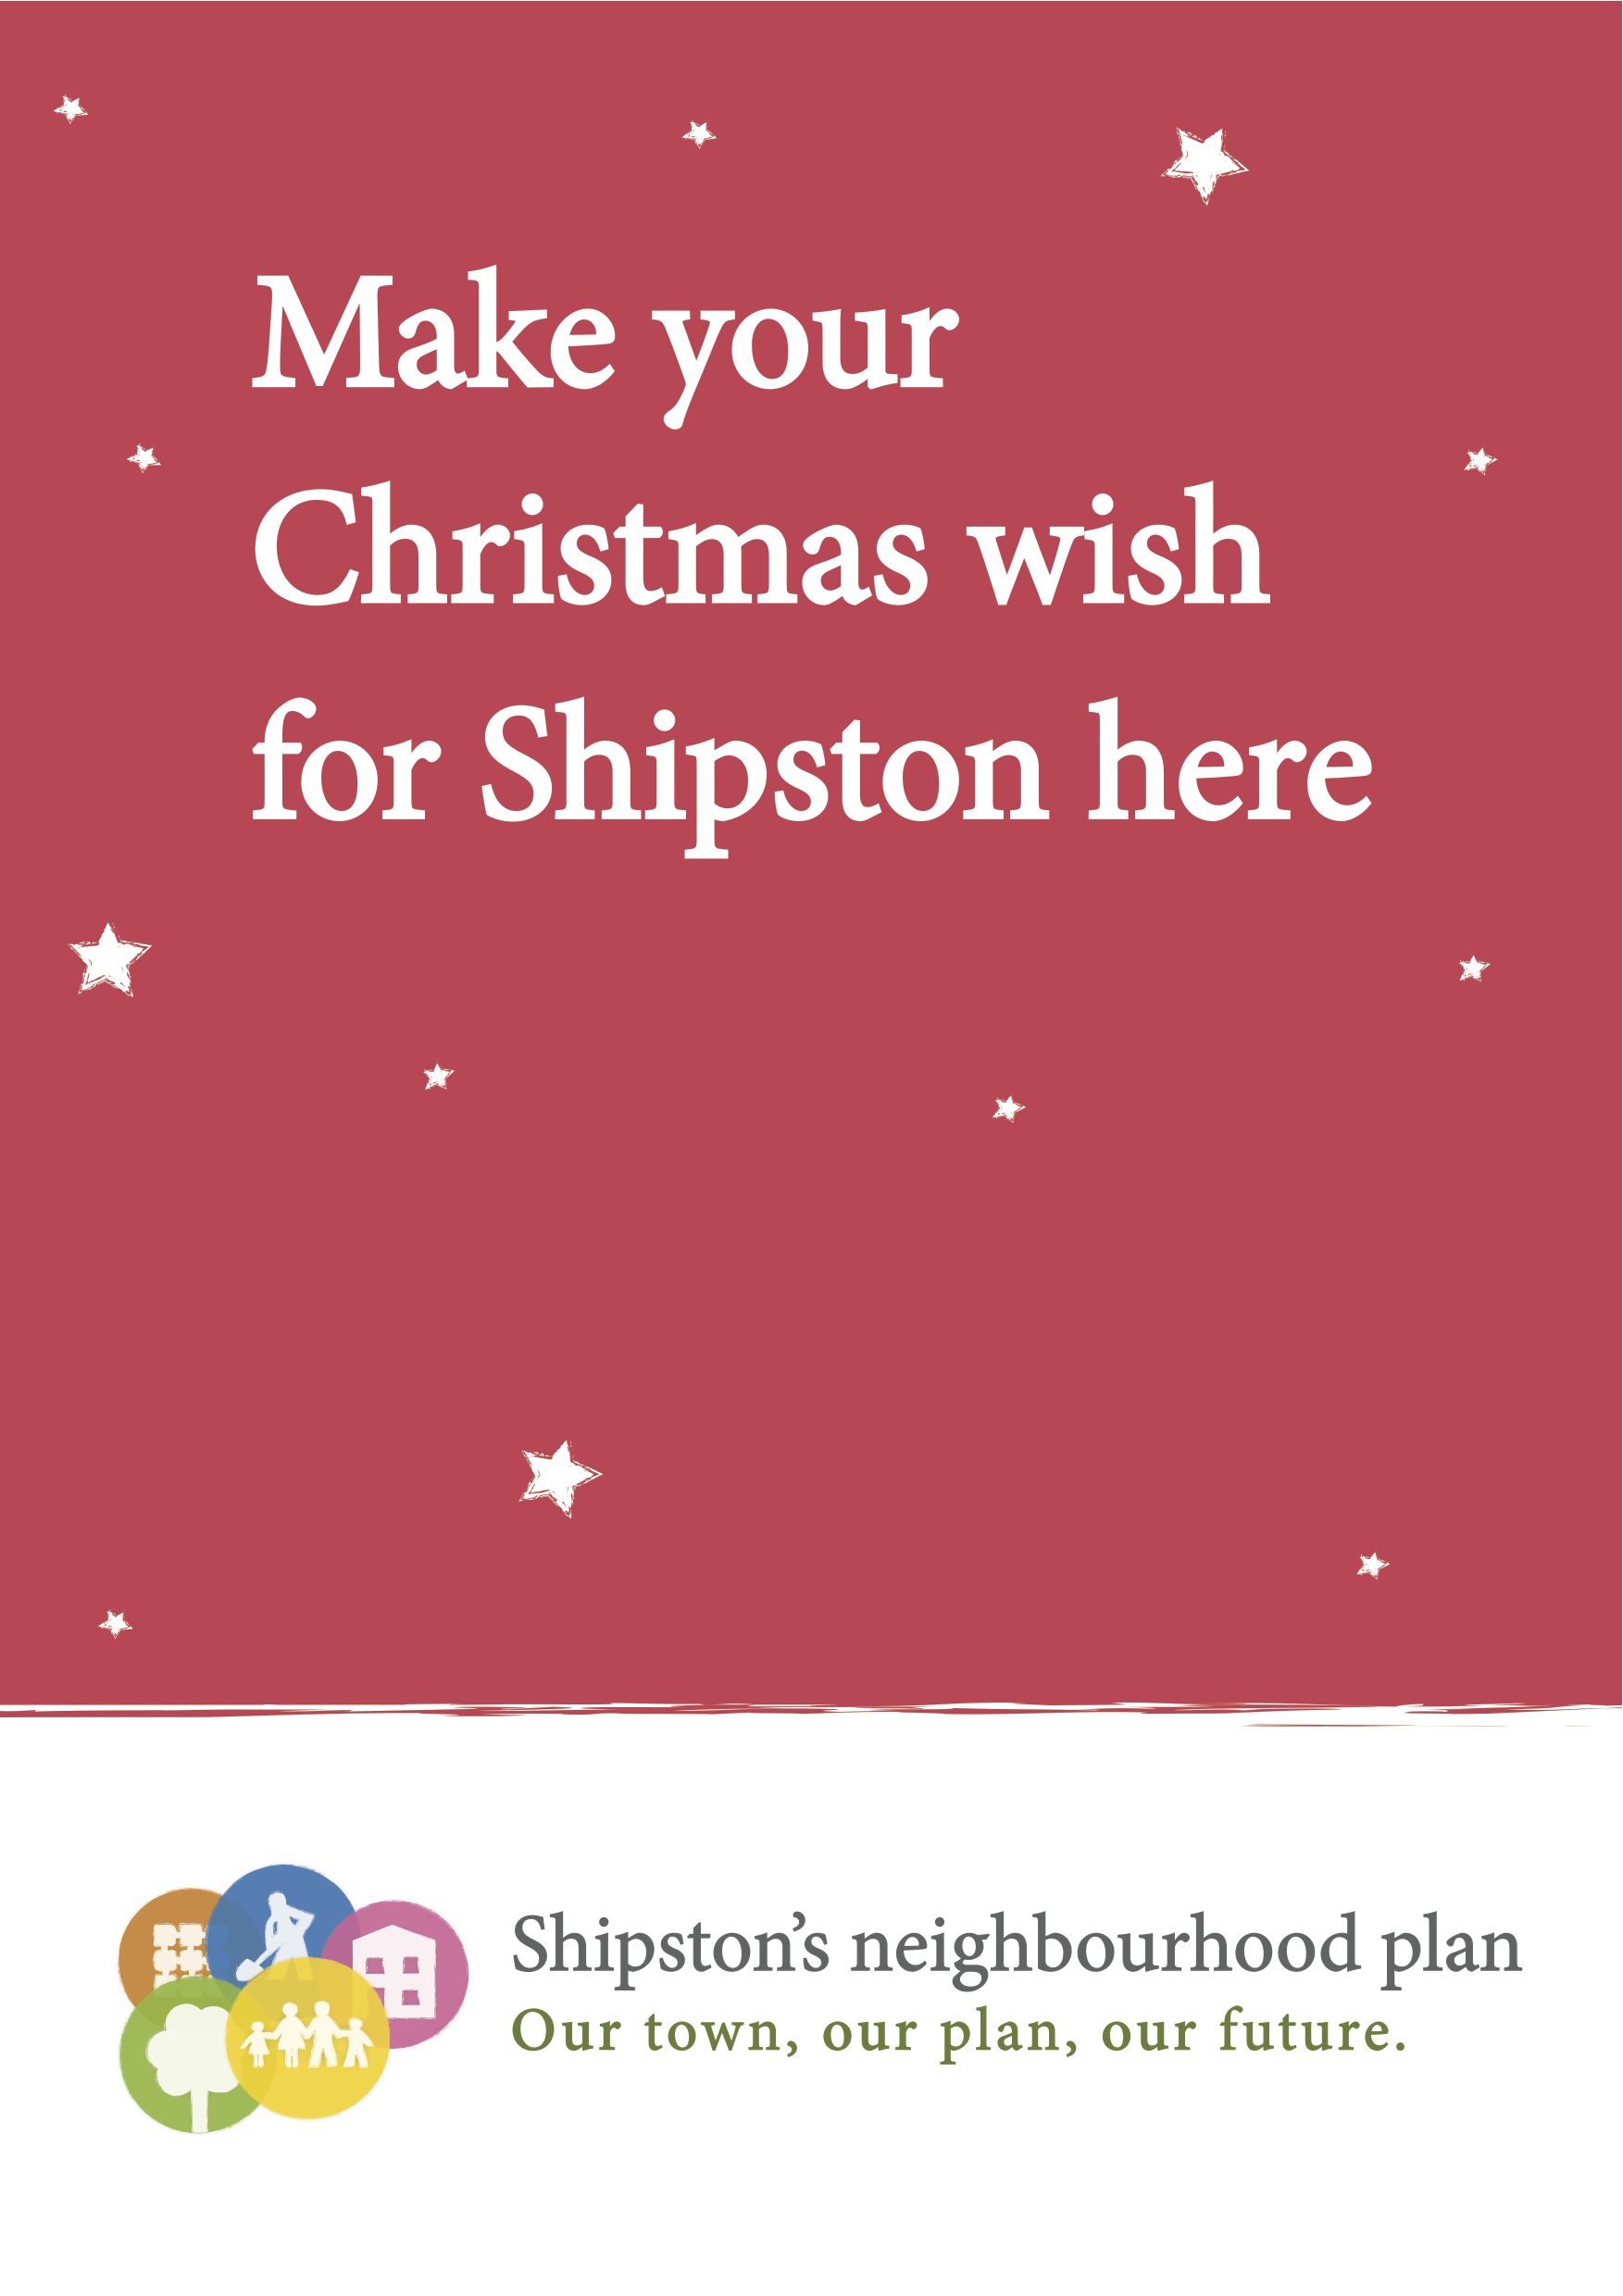 Make your Christmas Wish for Shipston